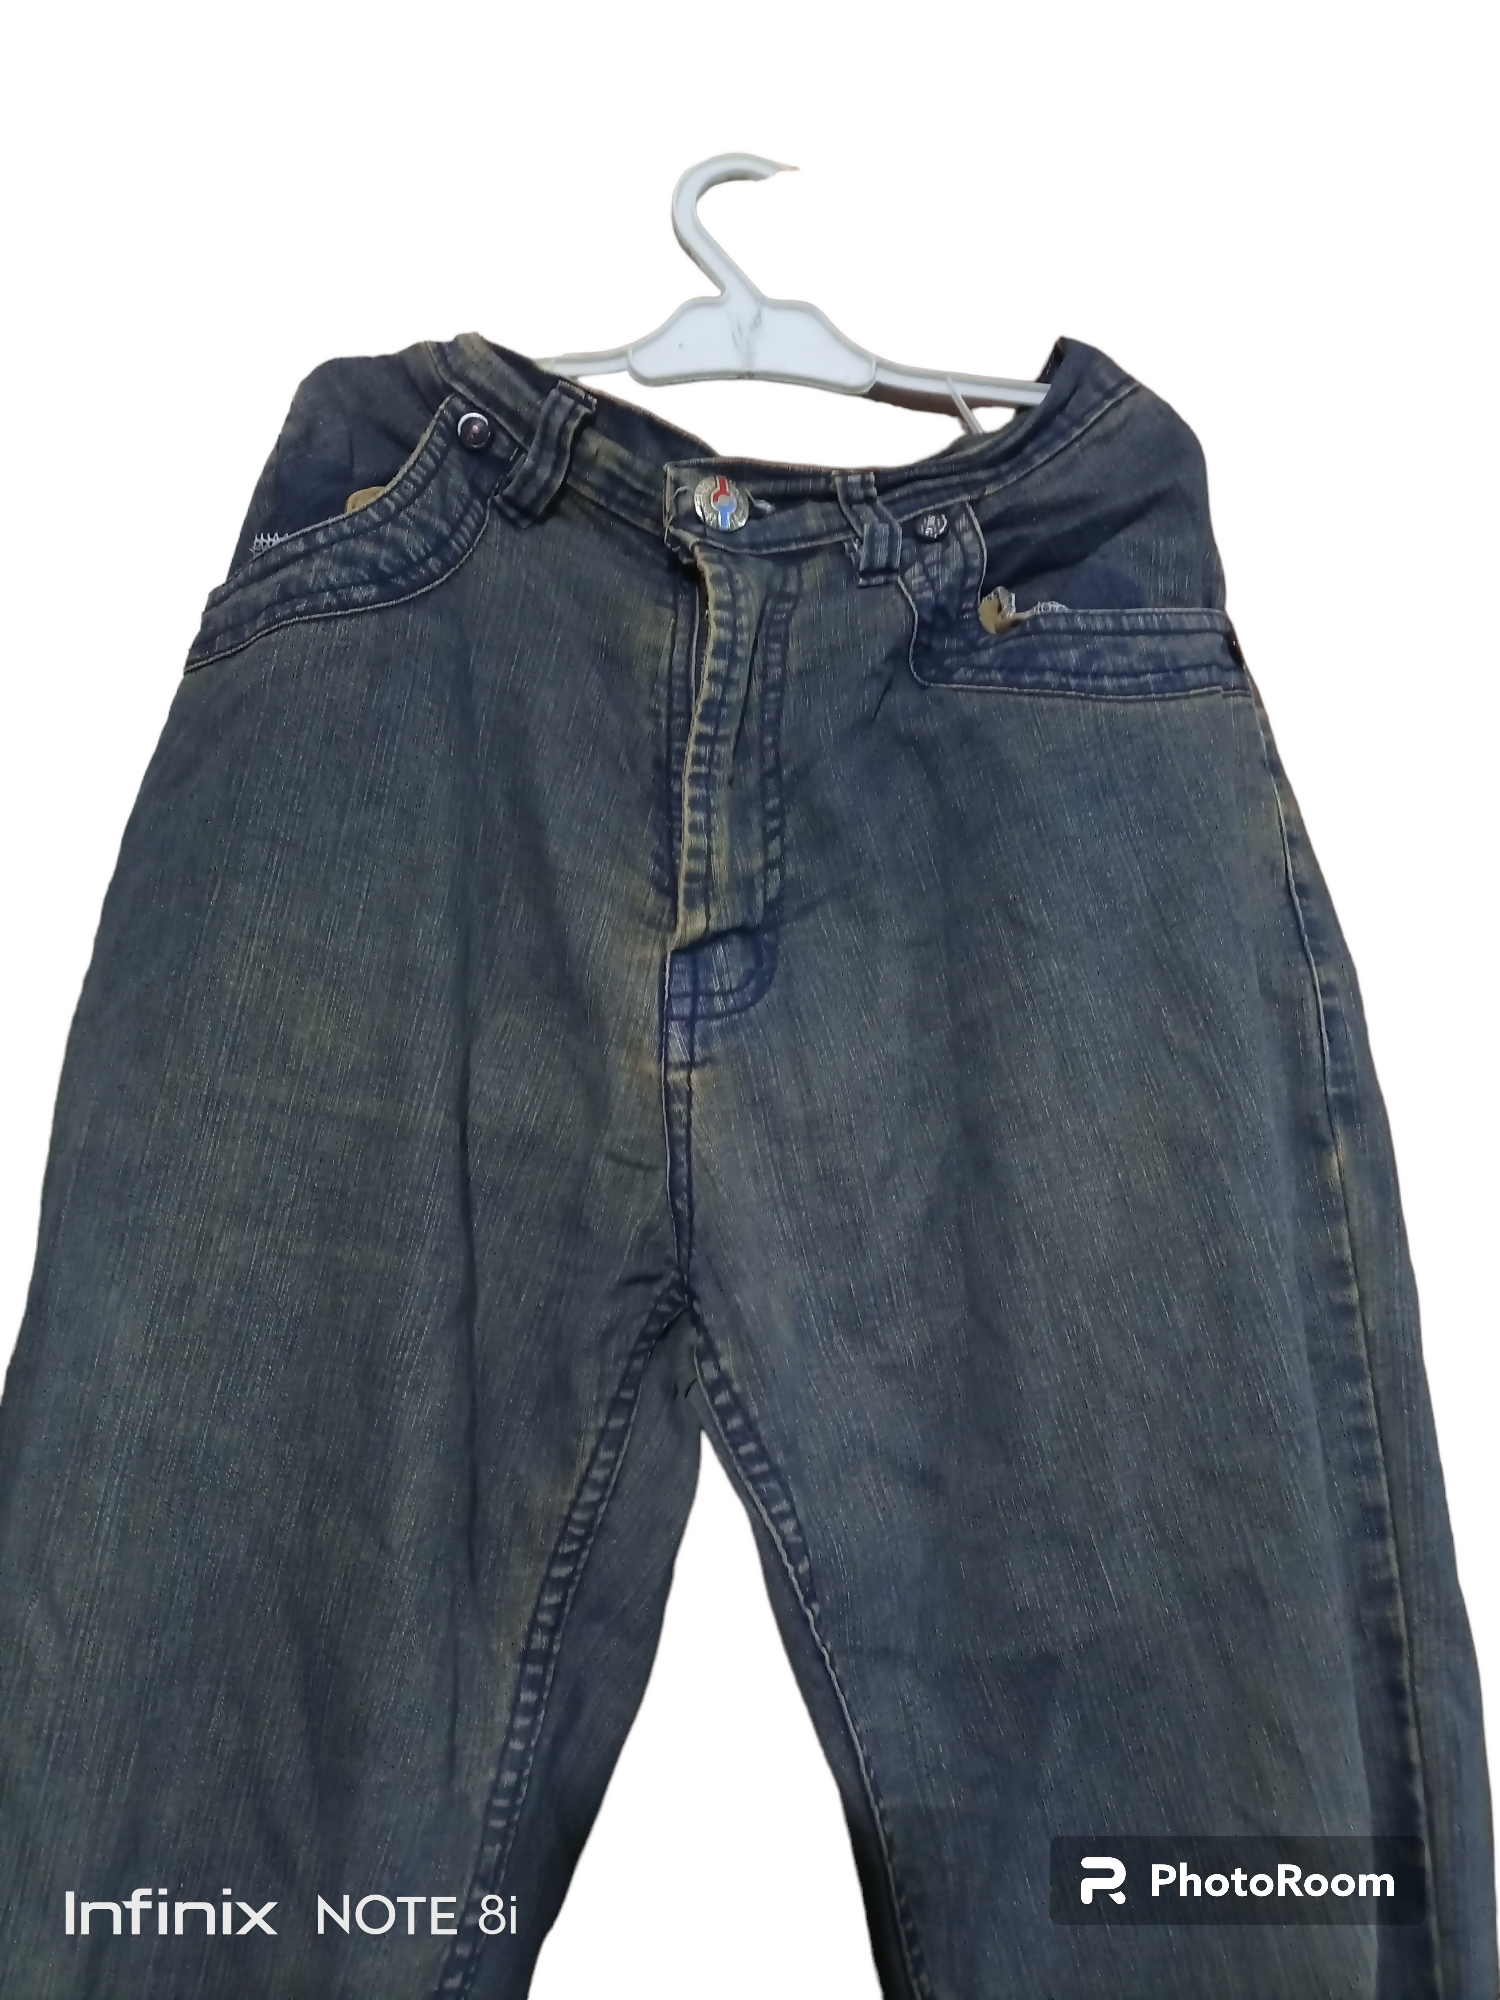 Blueish jeans | Men Jeans & Bottoms | Preloved